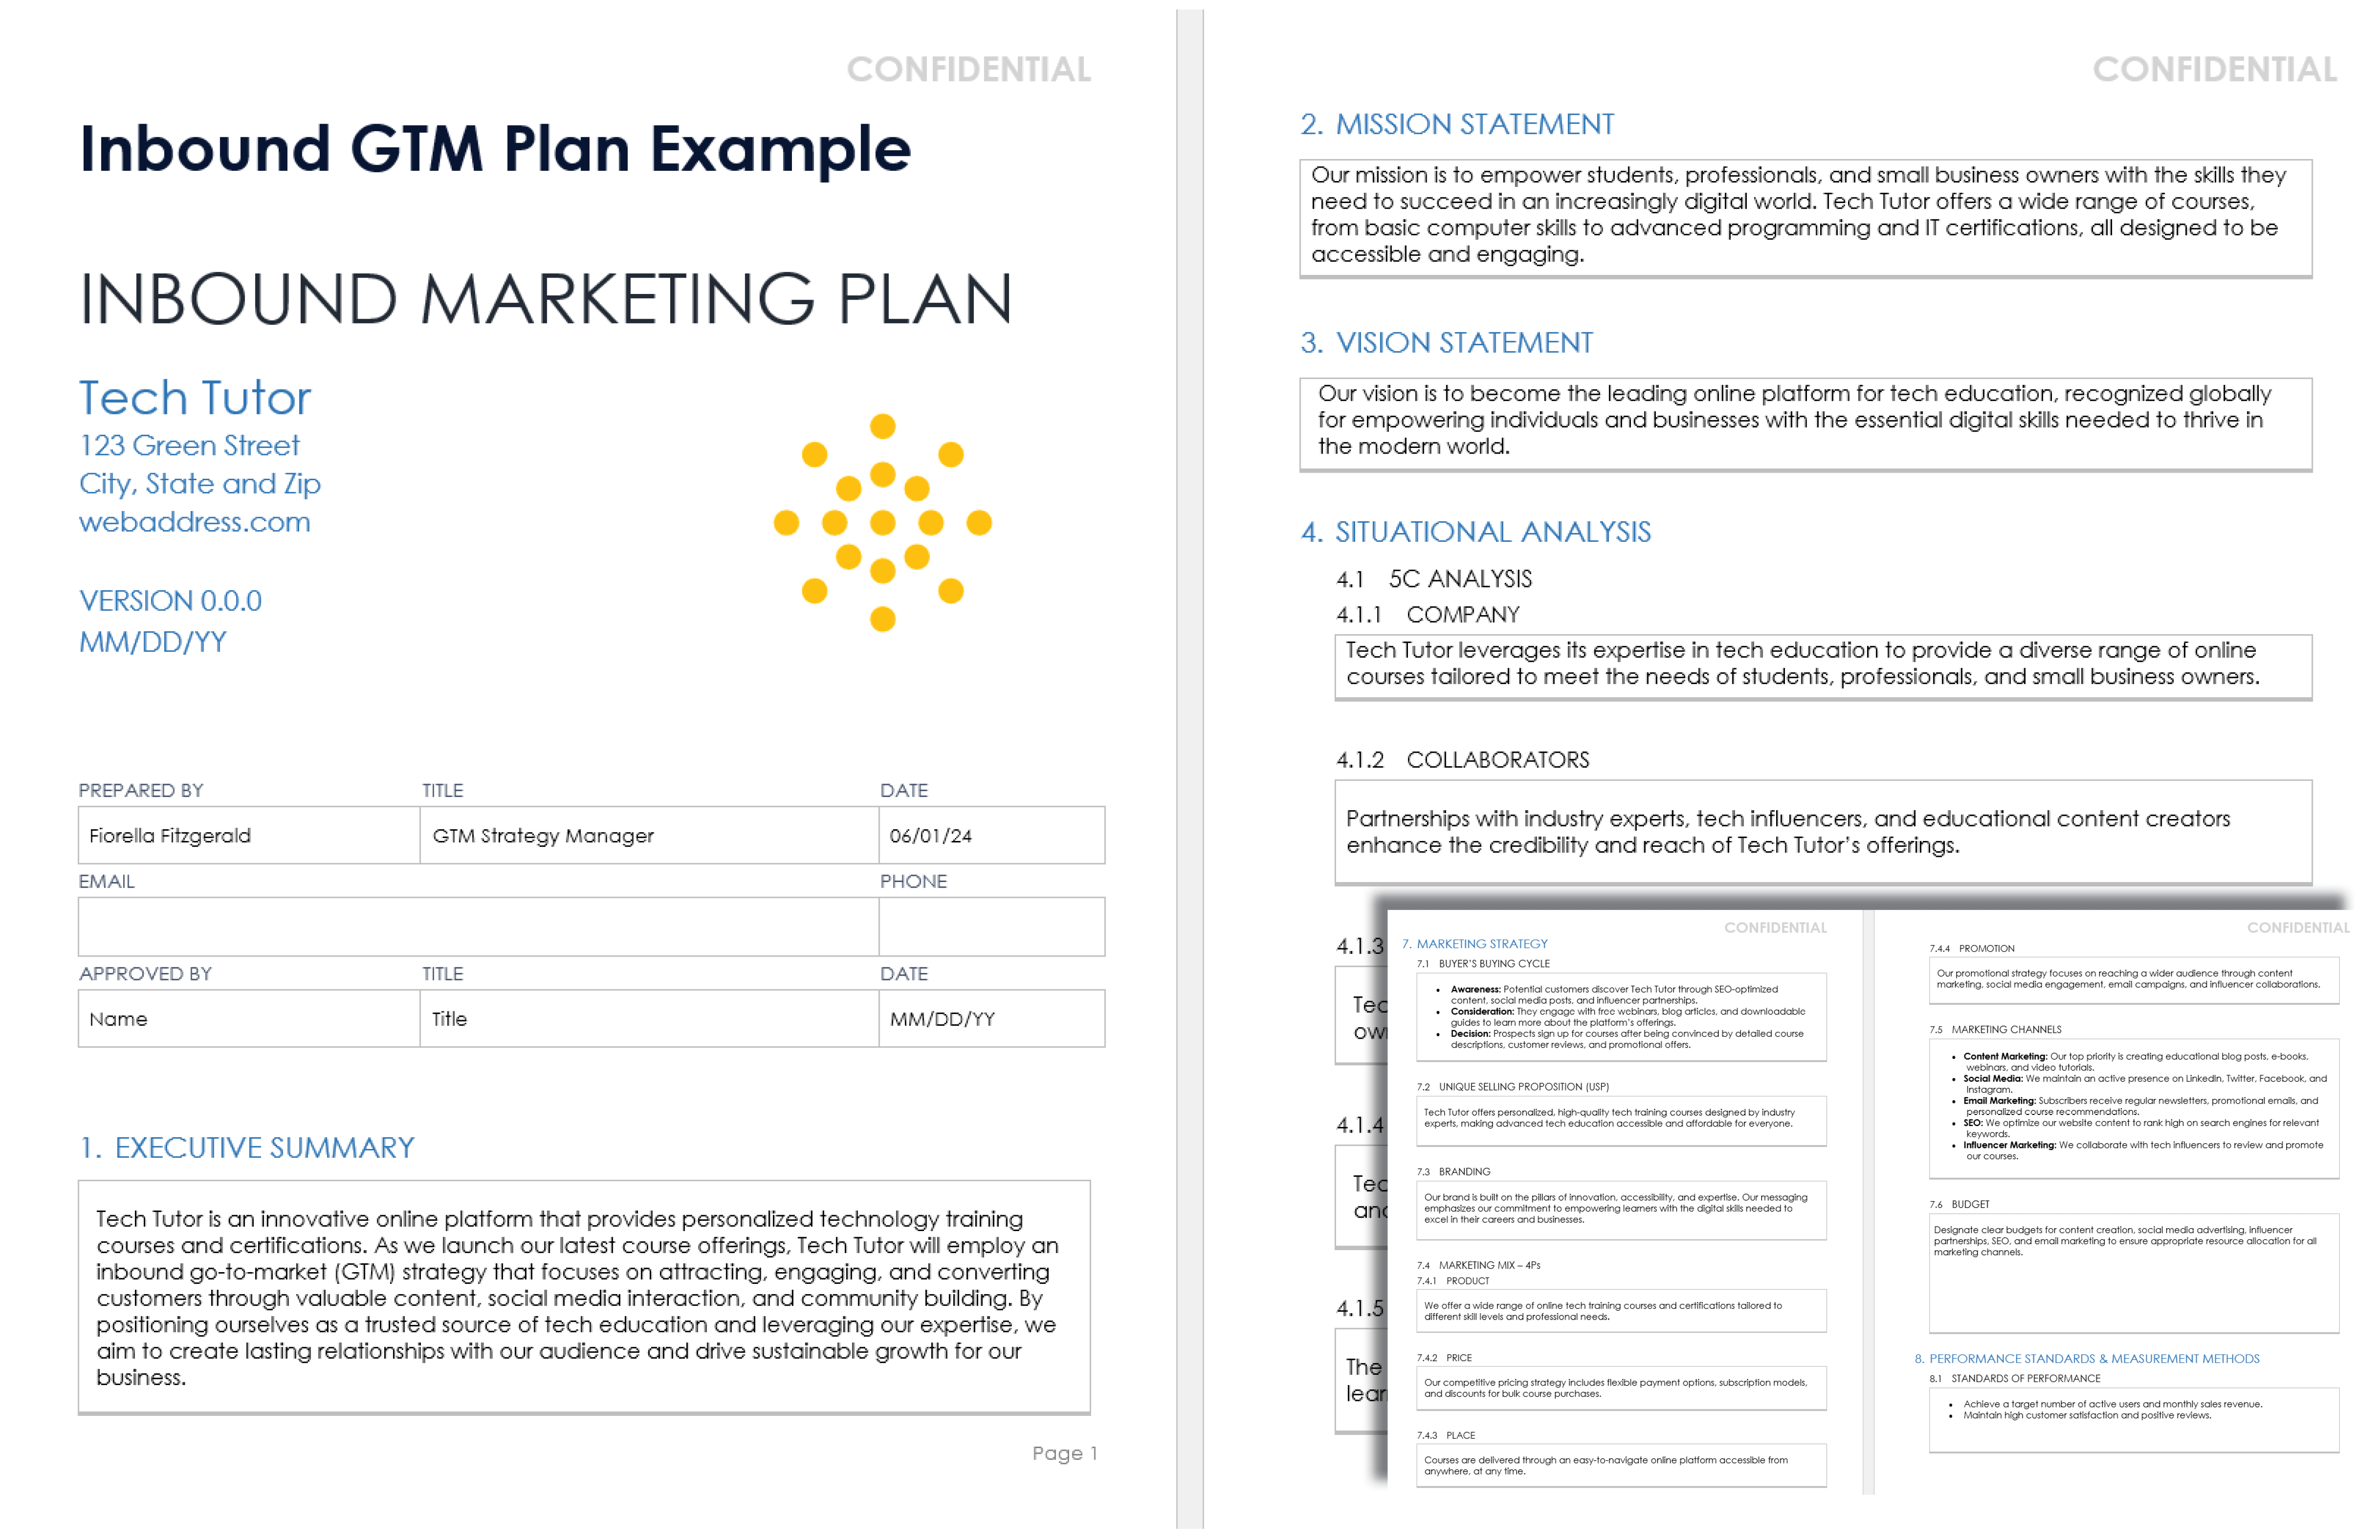 Inbound GTM Plan Example